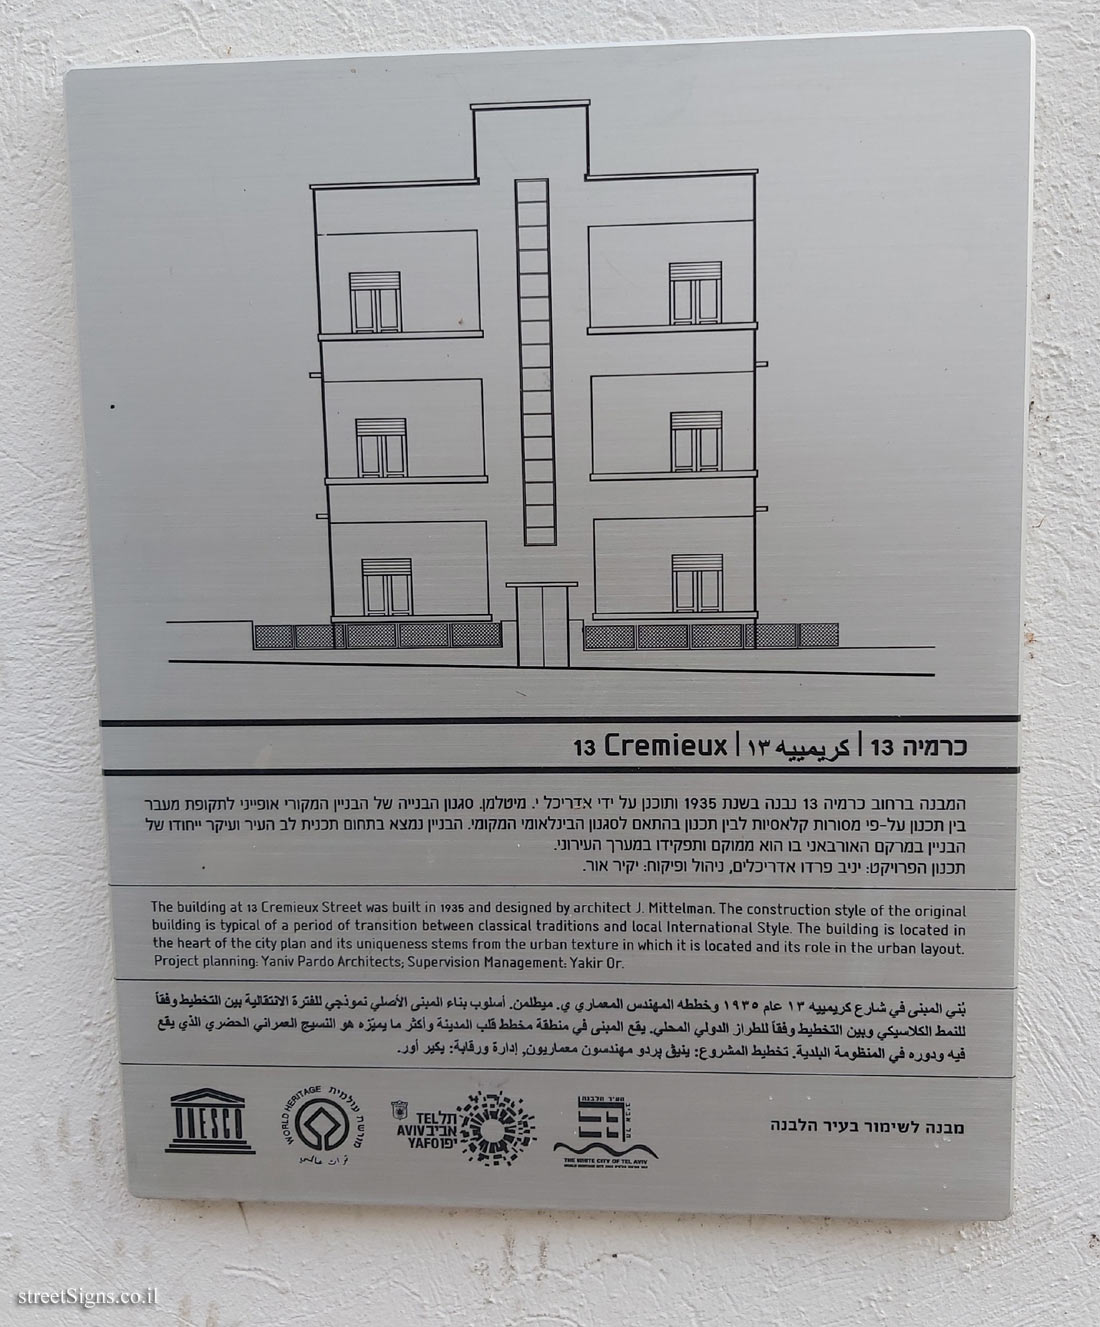 Tel Aviv - buildings for conservation -  13 Cremieux